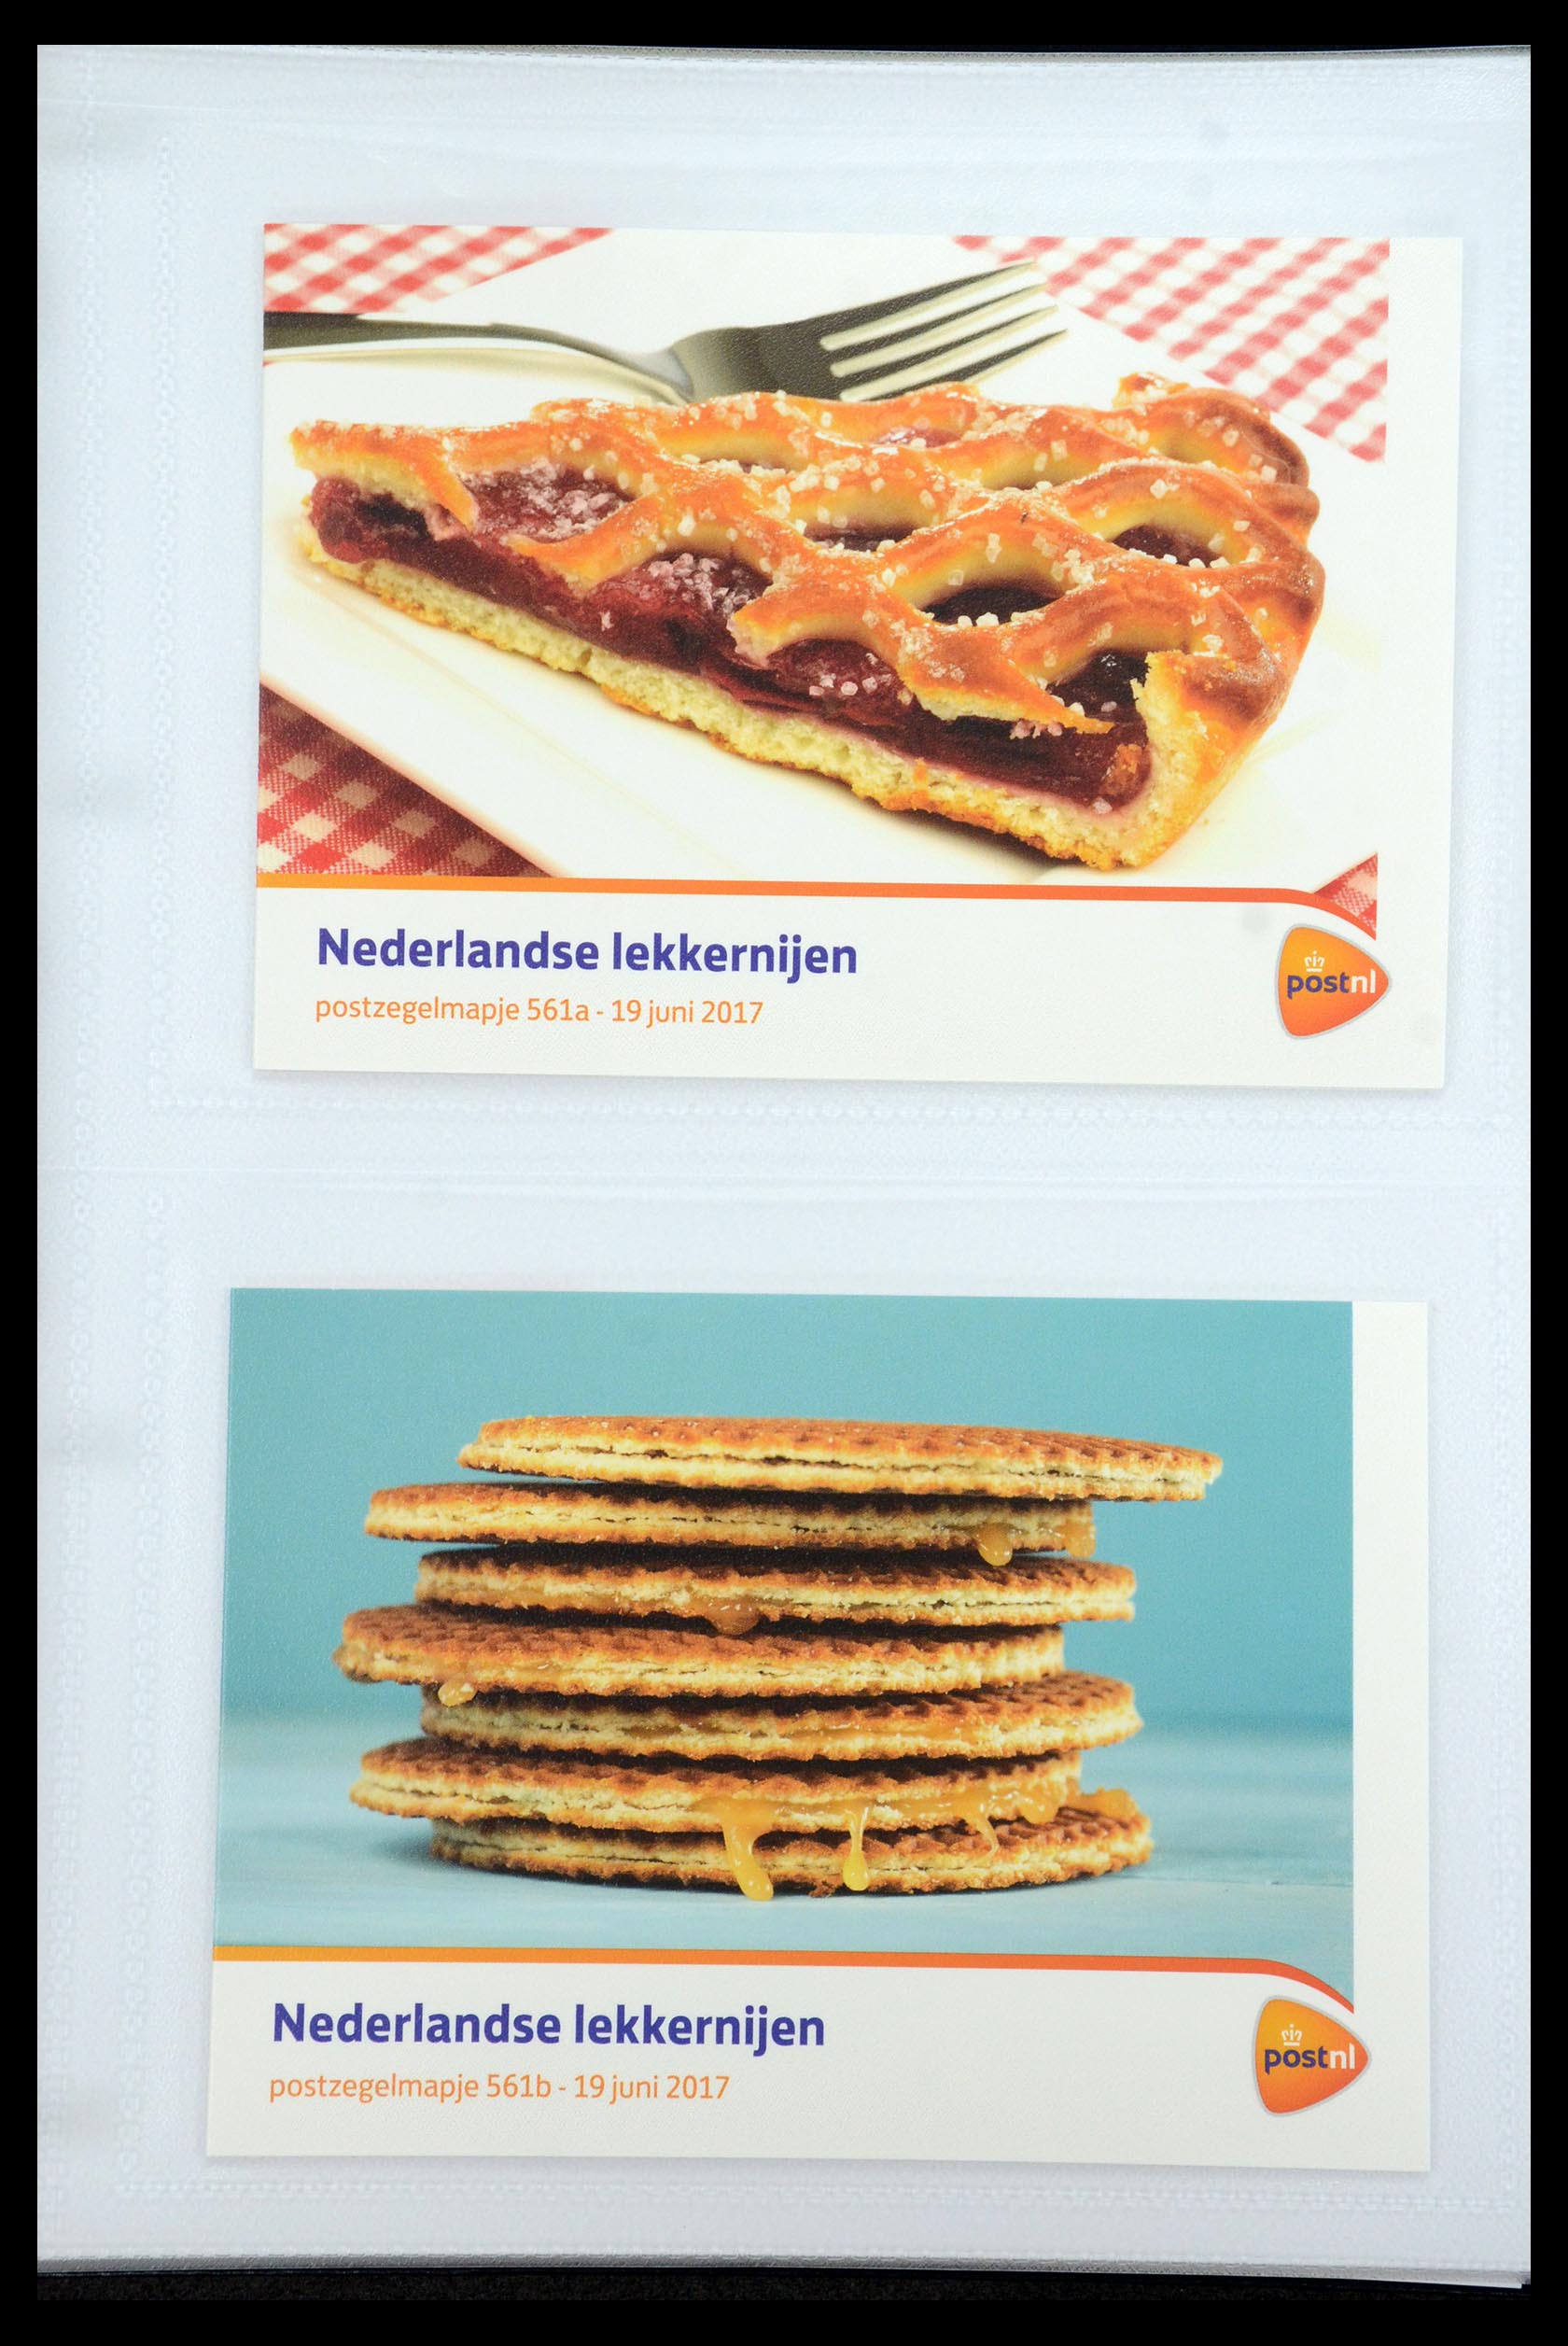 35947 336 - Stamp Collection 35947 Netherlands PTT presentation packs 1982-2019!